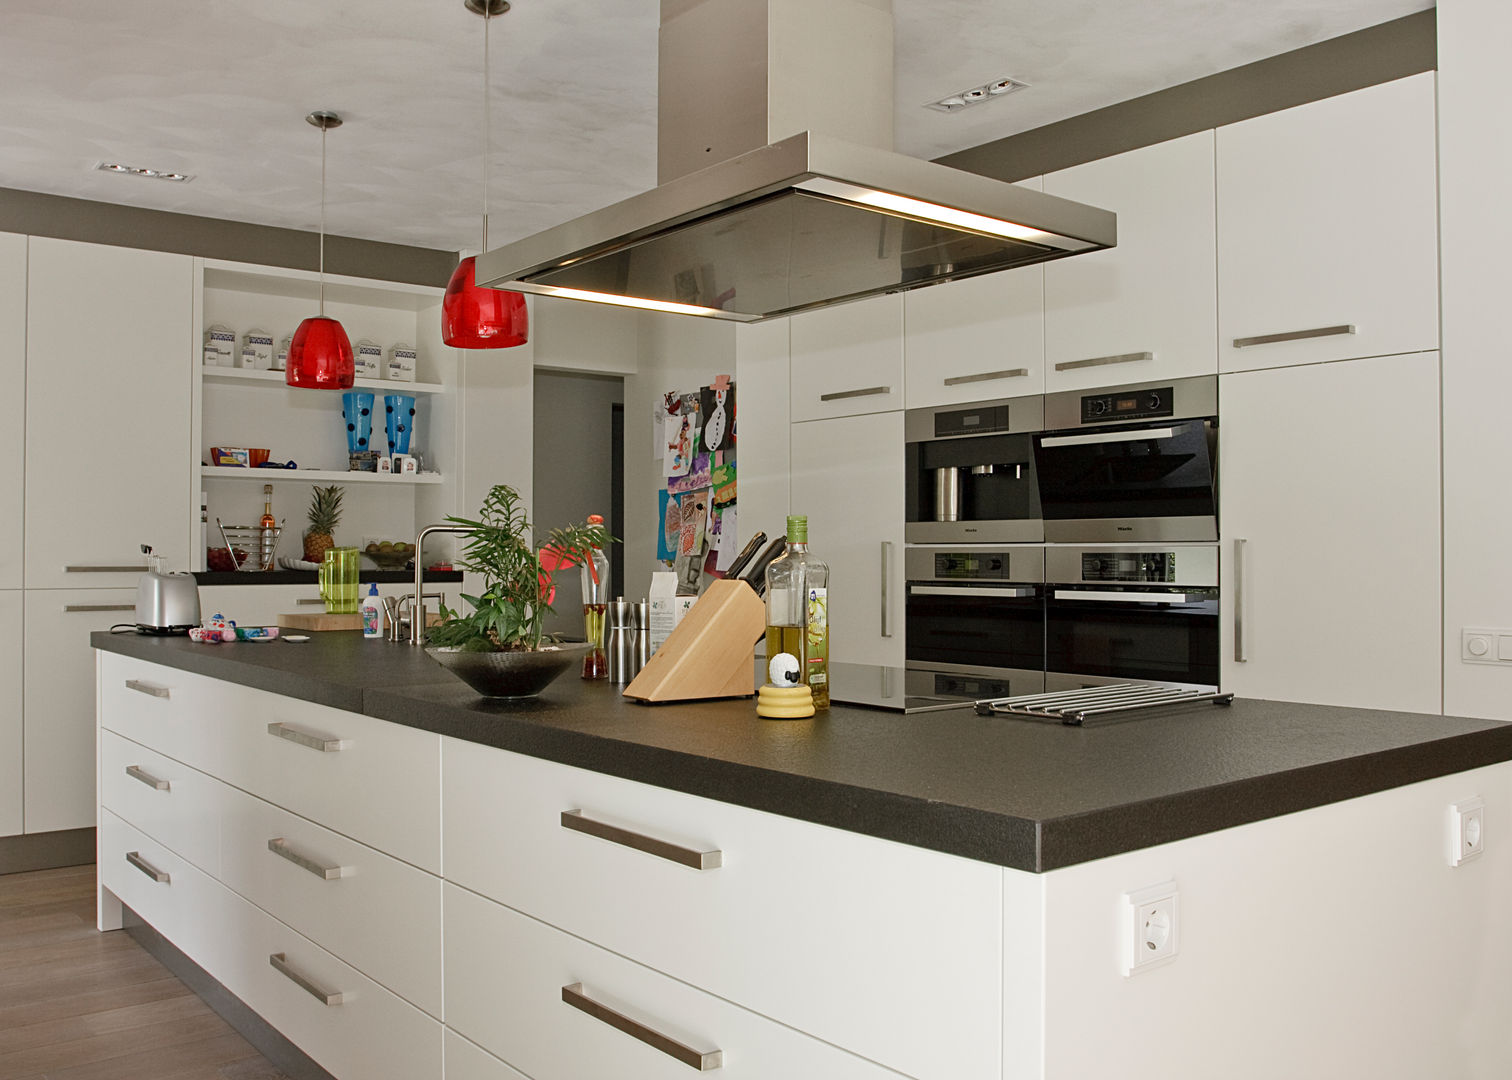 Open keuken, ruimte, licht - een keukeneiland biedt alle mogelijkhede, Thijs van de Wouw keuken- en interieurbouw Thijs van de Wouw keuken- en interieurbouw ห้องครัว